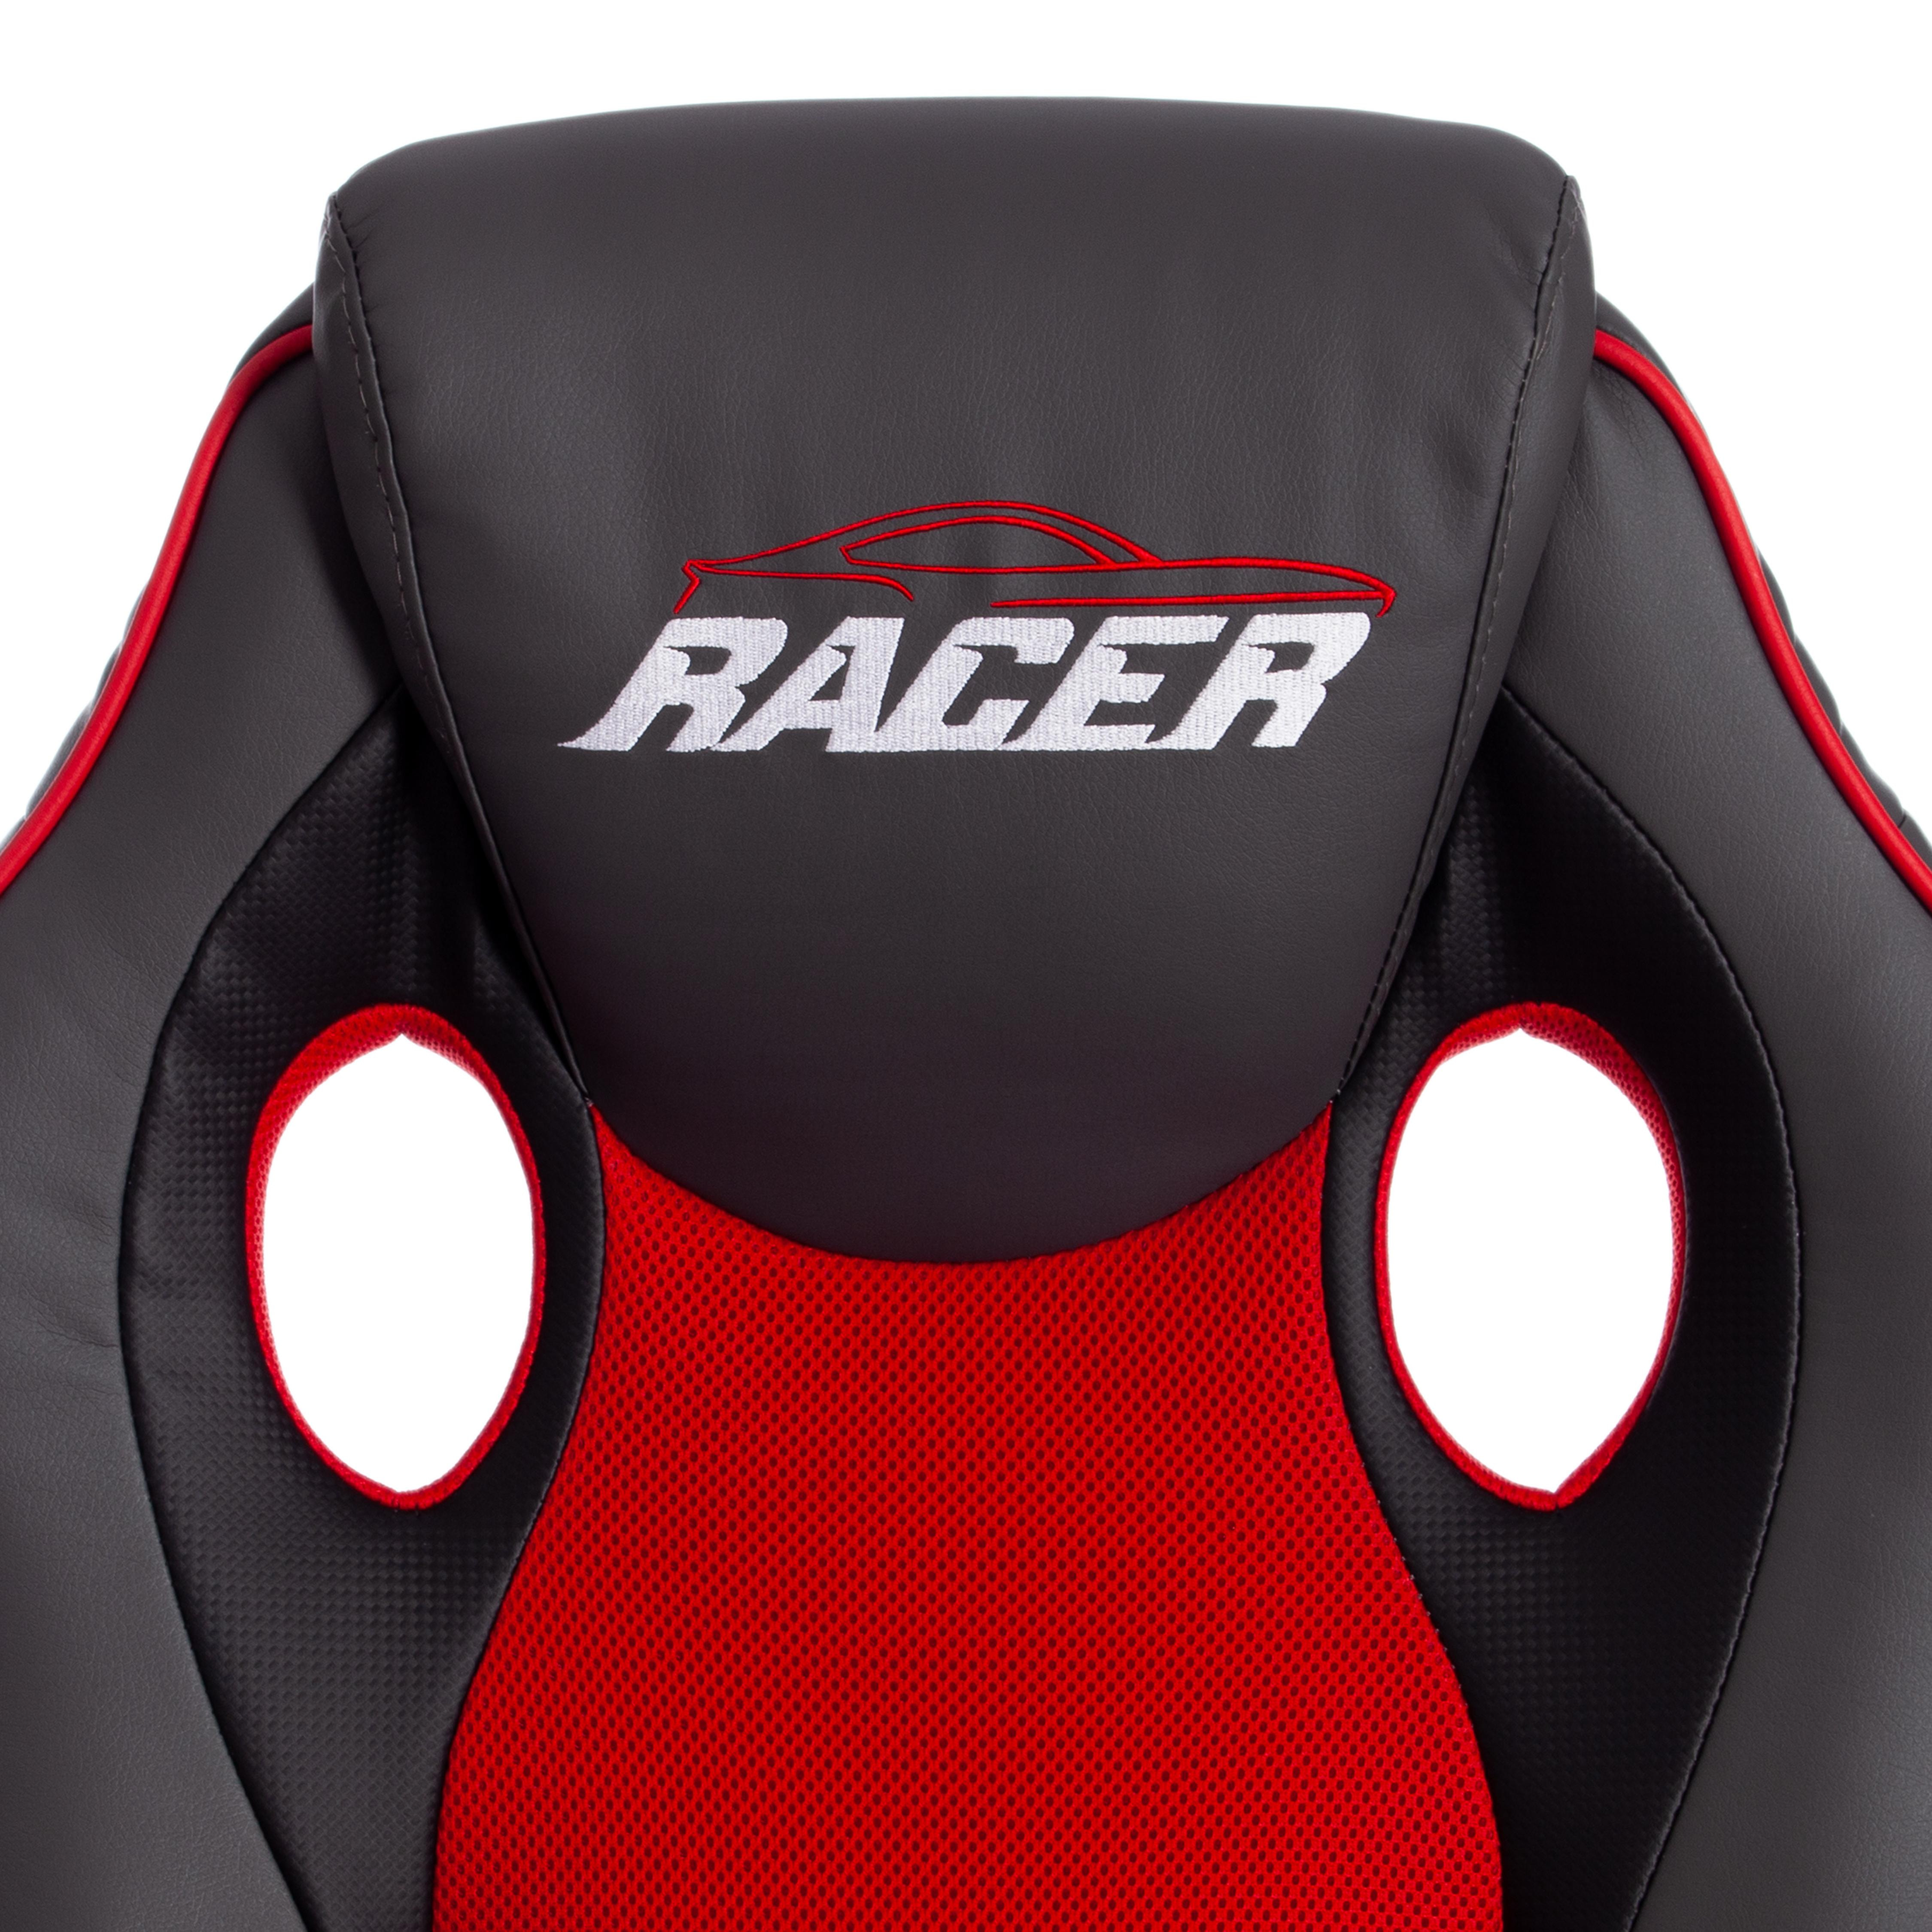 Кресло RACER GT new кож/зам/ткань, металлик/красный, 36/08